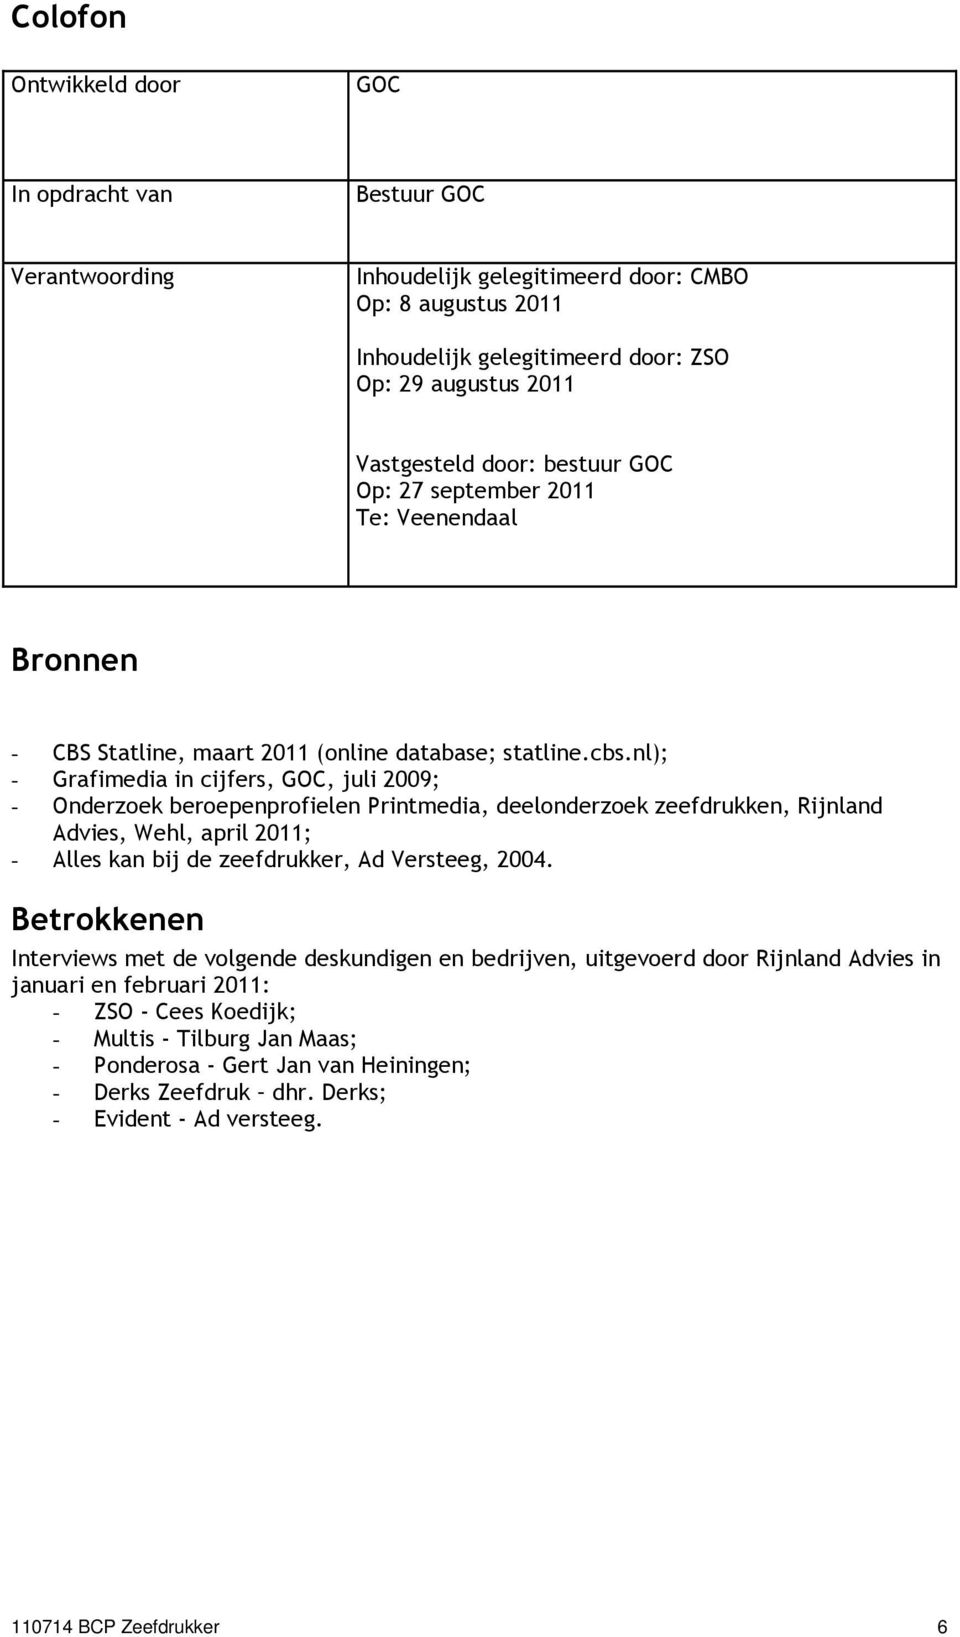 nl); - Grafimedia in cijfers, GOC, juli 2009; - Onderzoek beroepenprofielen Printmedia, deelonderzoek zeefdrukken, Rijnland Advies, Wehl, april 2011; - Alles kan bij de zeefdrukker, Ad Versteeg, 2004.